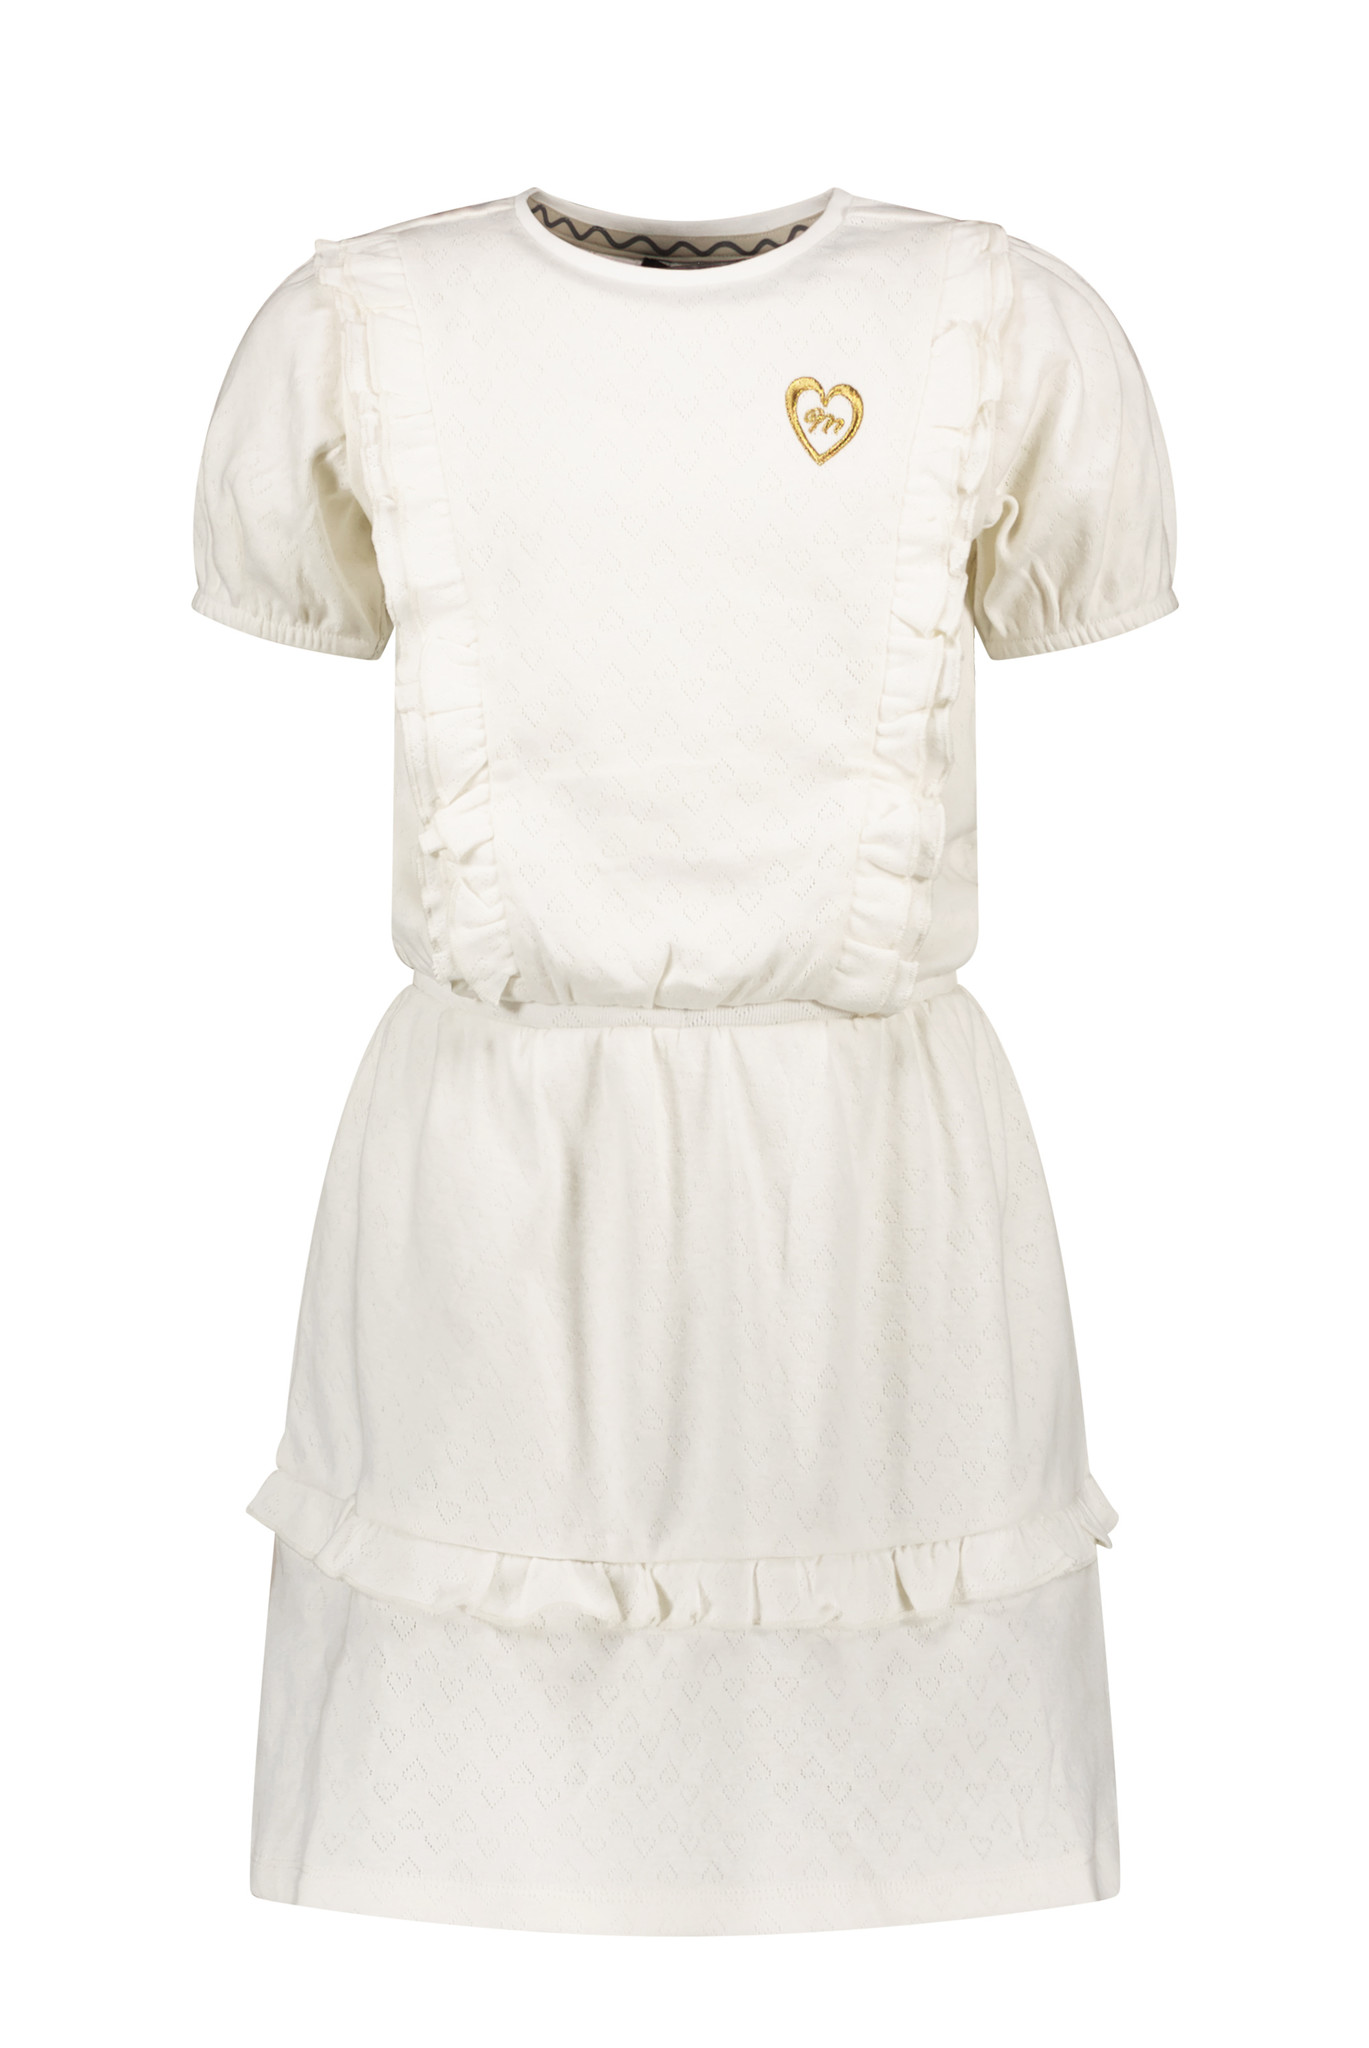 Moodstreet Fancy Dress With Frills And Puffed Sleeves Jurken Meisjes - Rok - Jurk - Gebroken wit - Maat 134/140